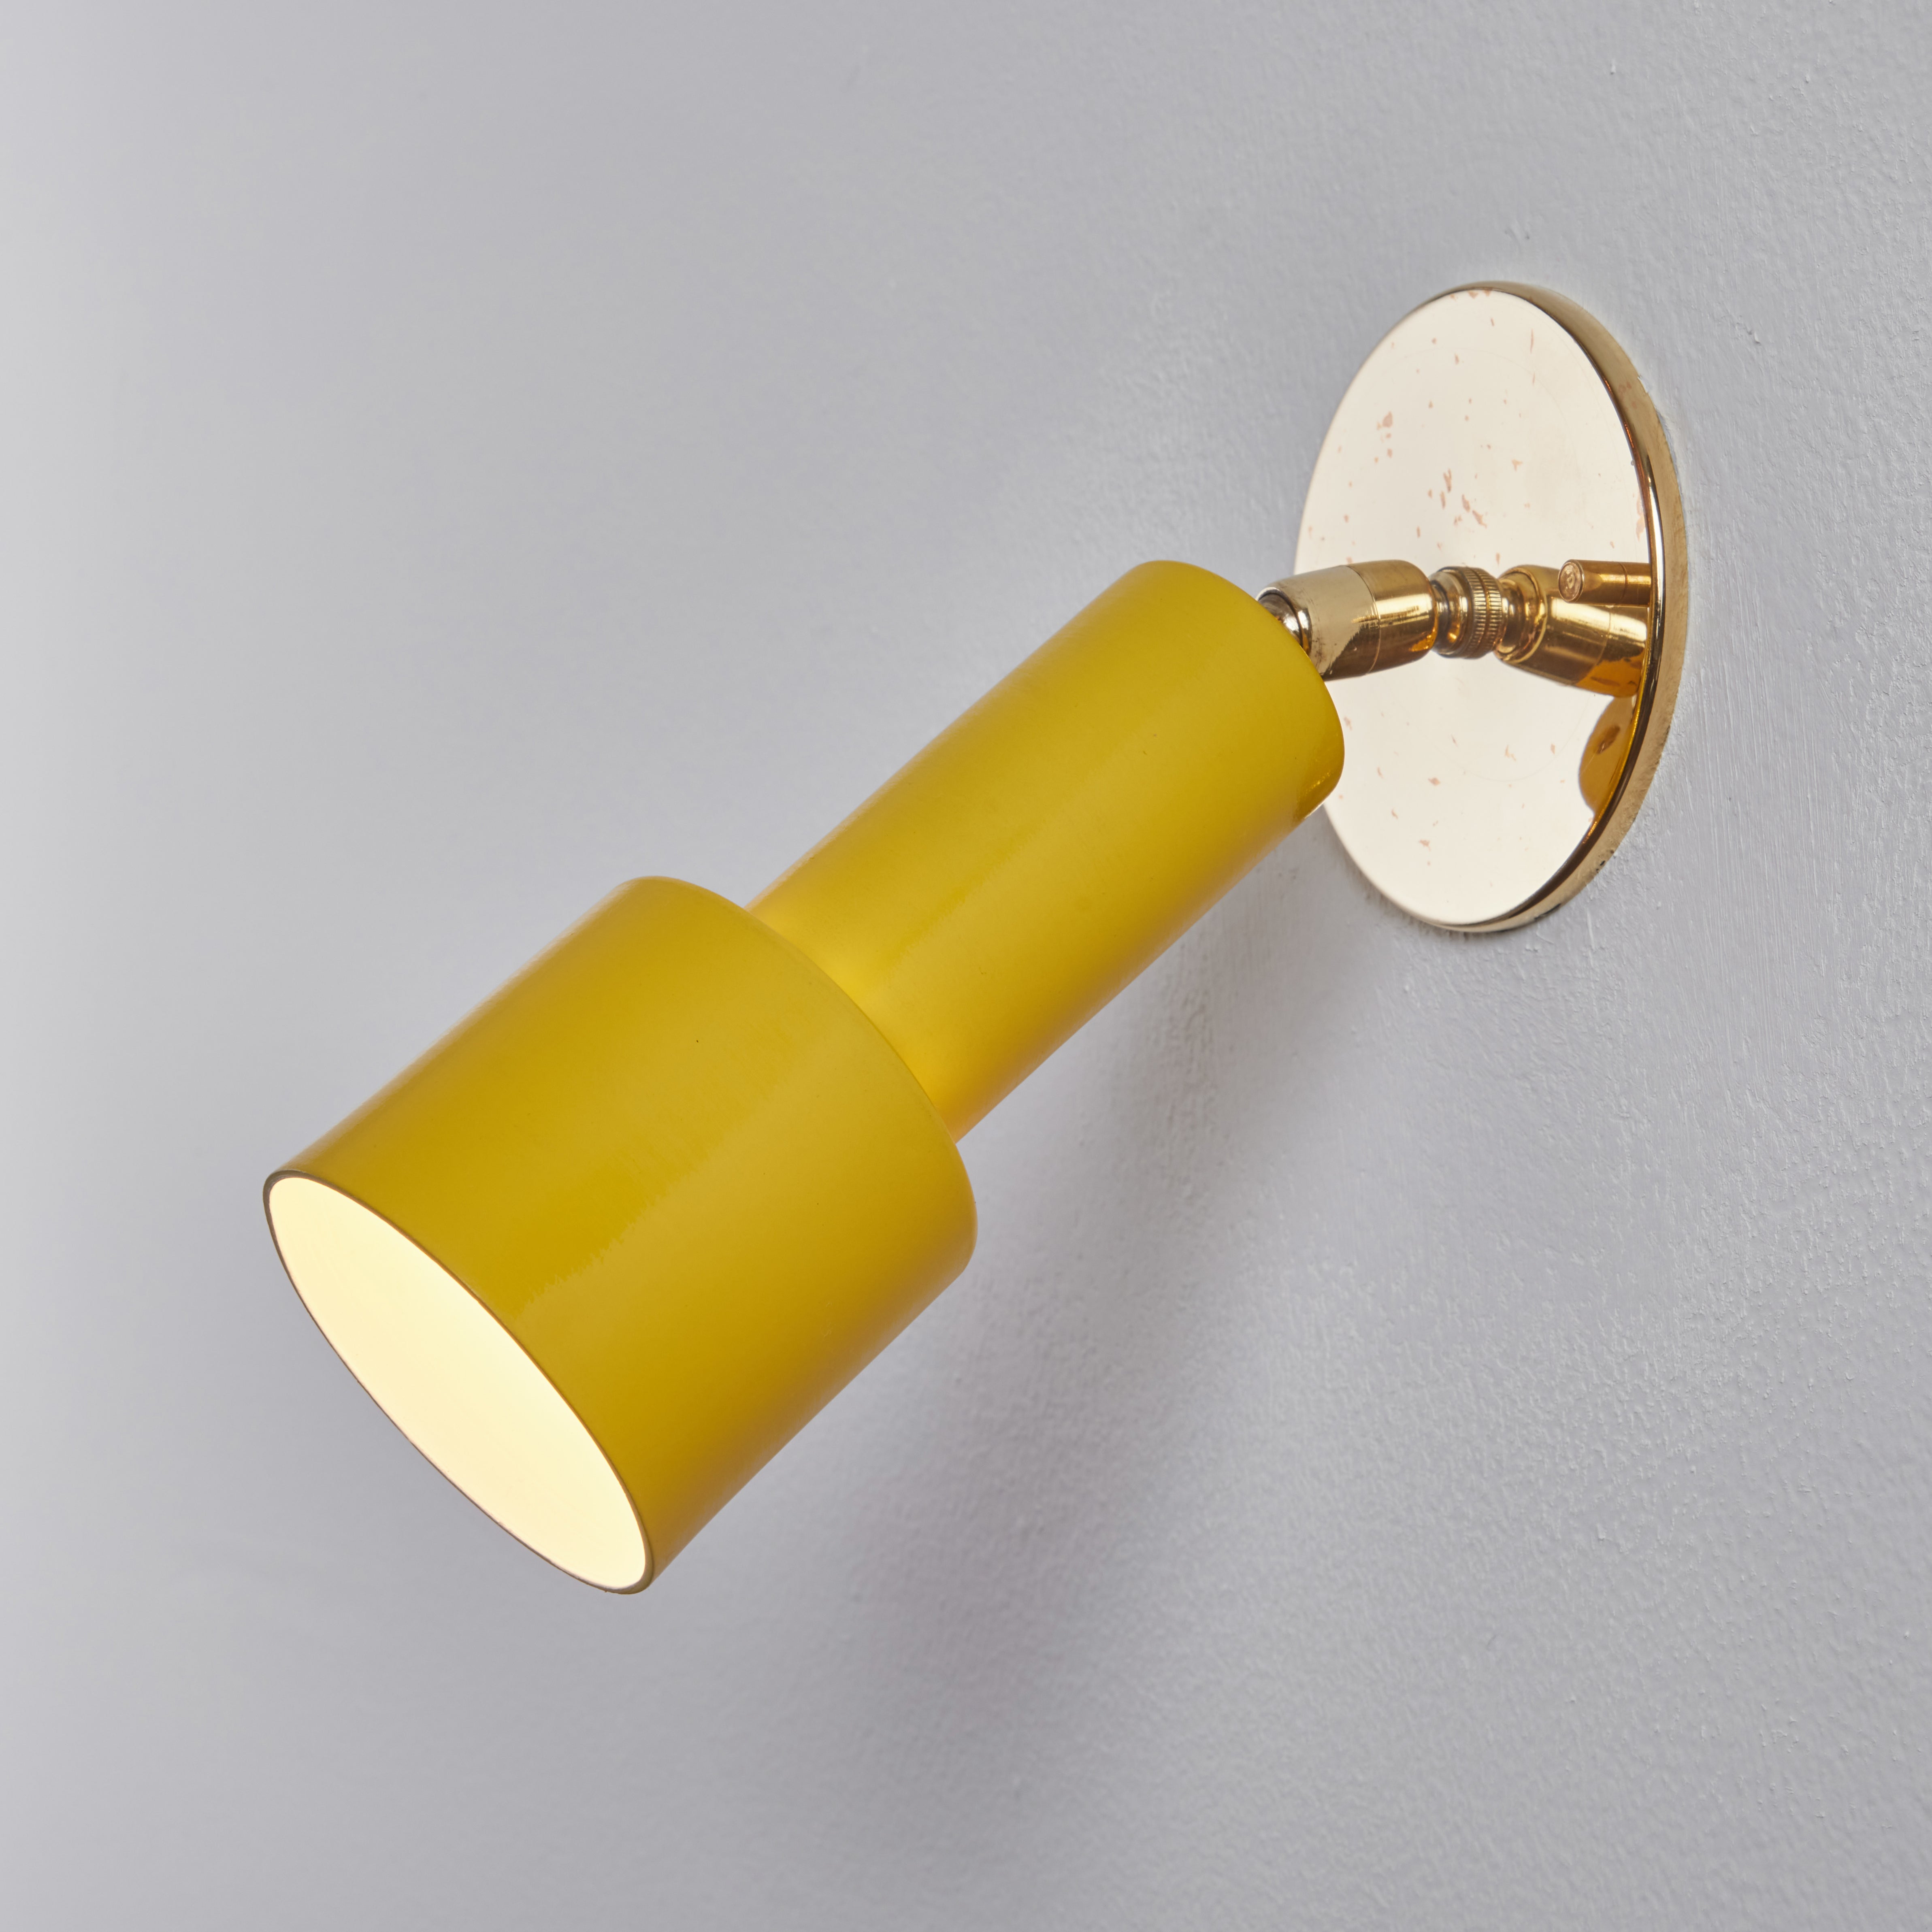 Tito Agnoli, 1960er Jahre, perforiertes gelbes Metall und Messing, für O-Luce. Diese ikonischen Wandleuchter sind aus gelb lackiertem, perforiertem Metall und Messing gefertigt. Die Lampen drehen sich frei auf hochgradig einstellbaren